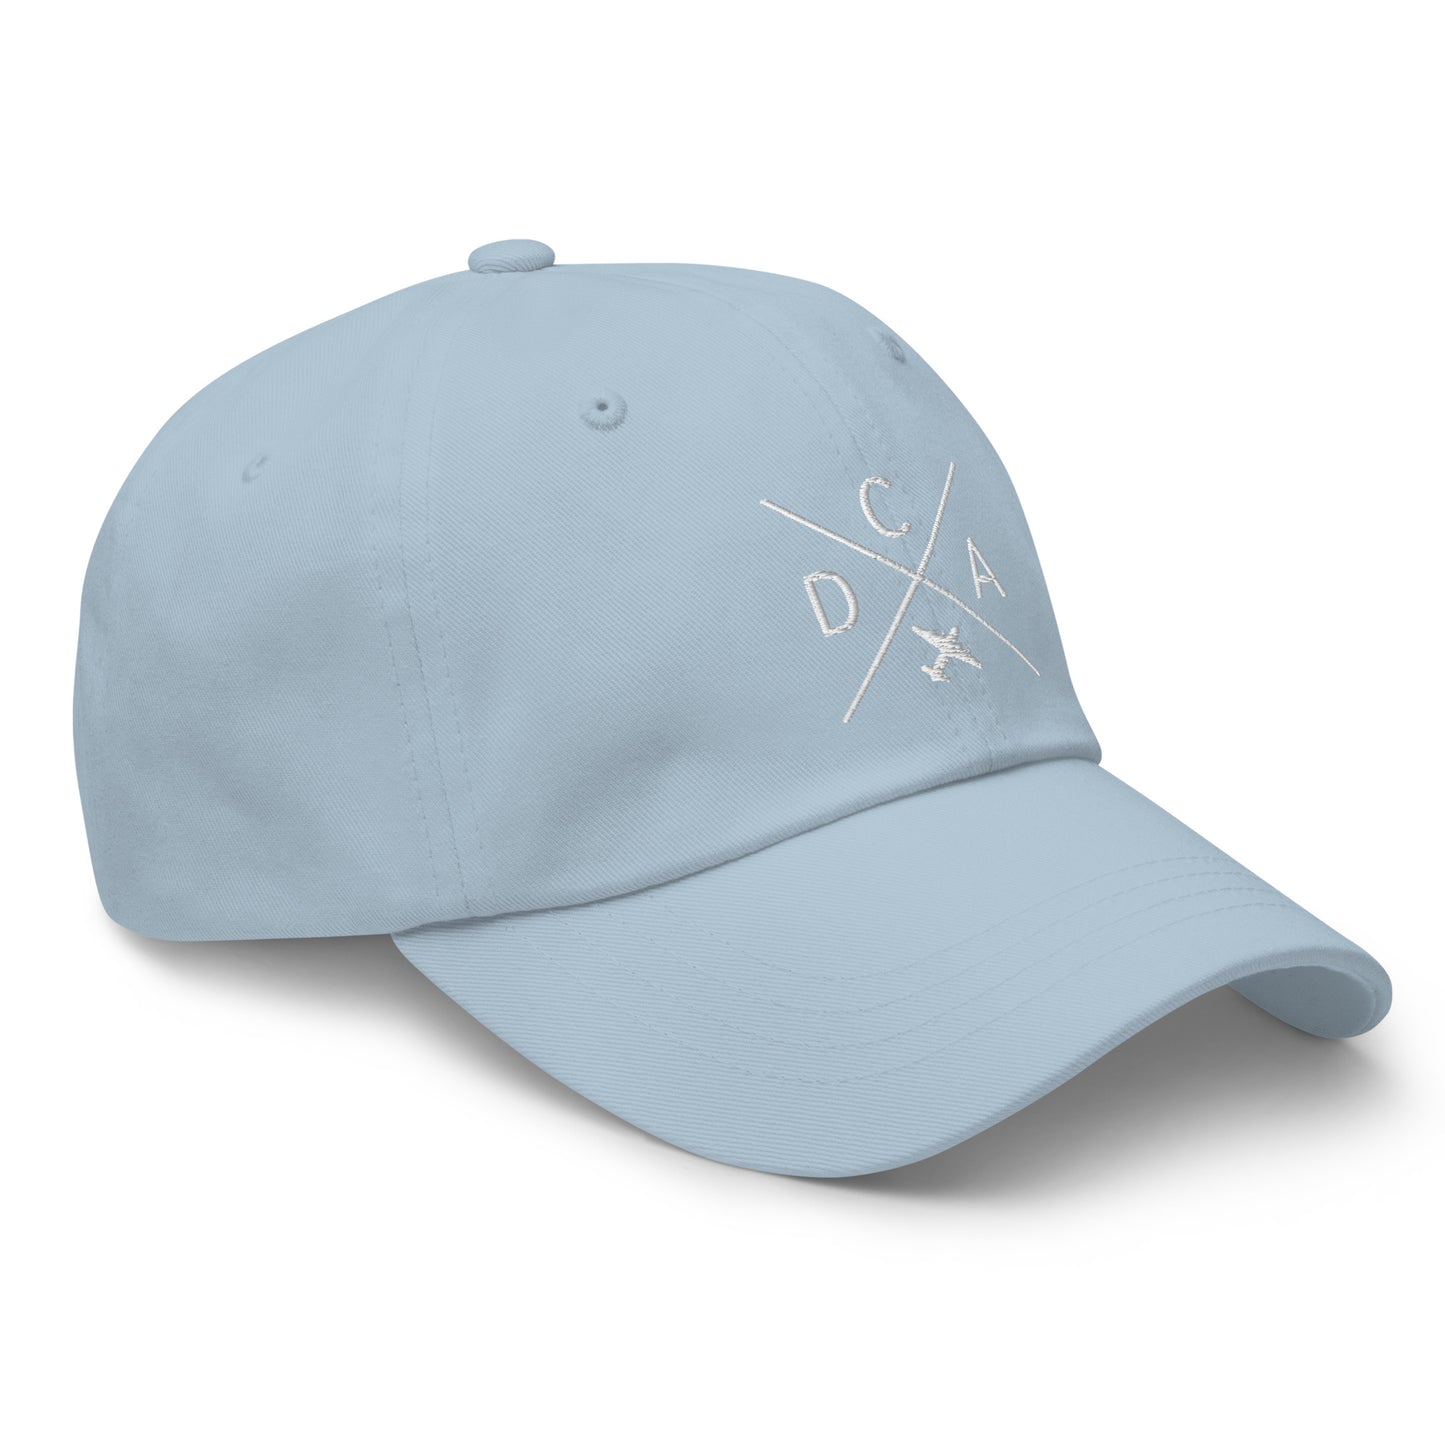 Crossed-X Dad Hat - White • DCA Washington • YHM Designs - Image 29